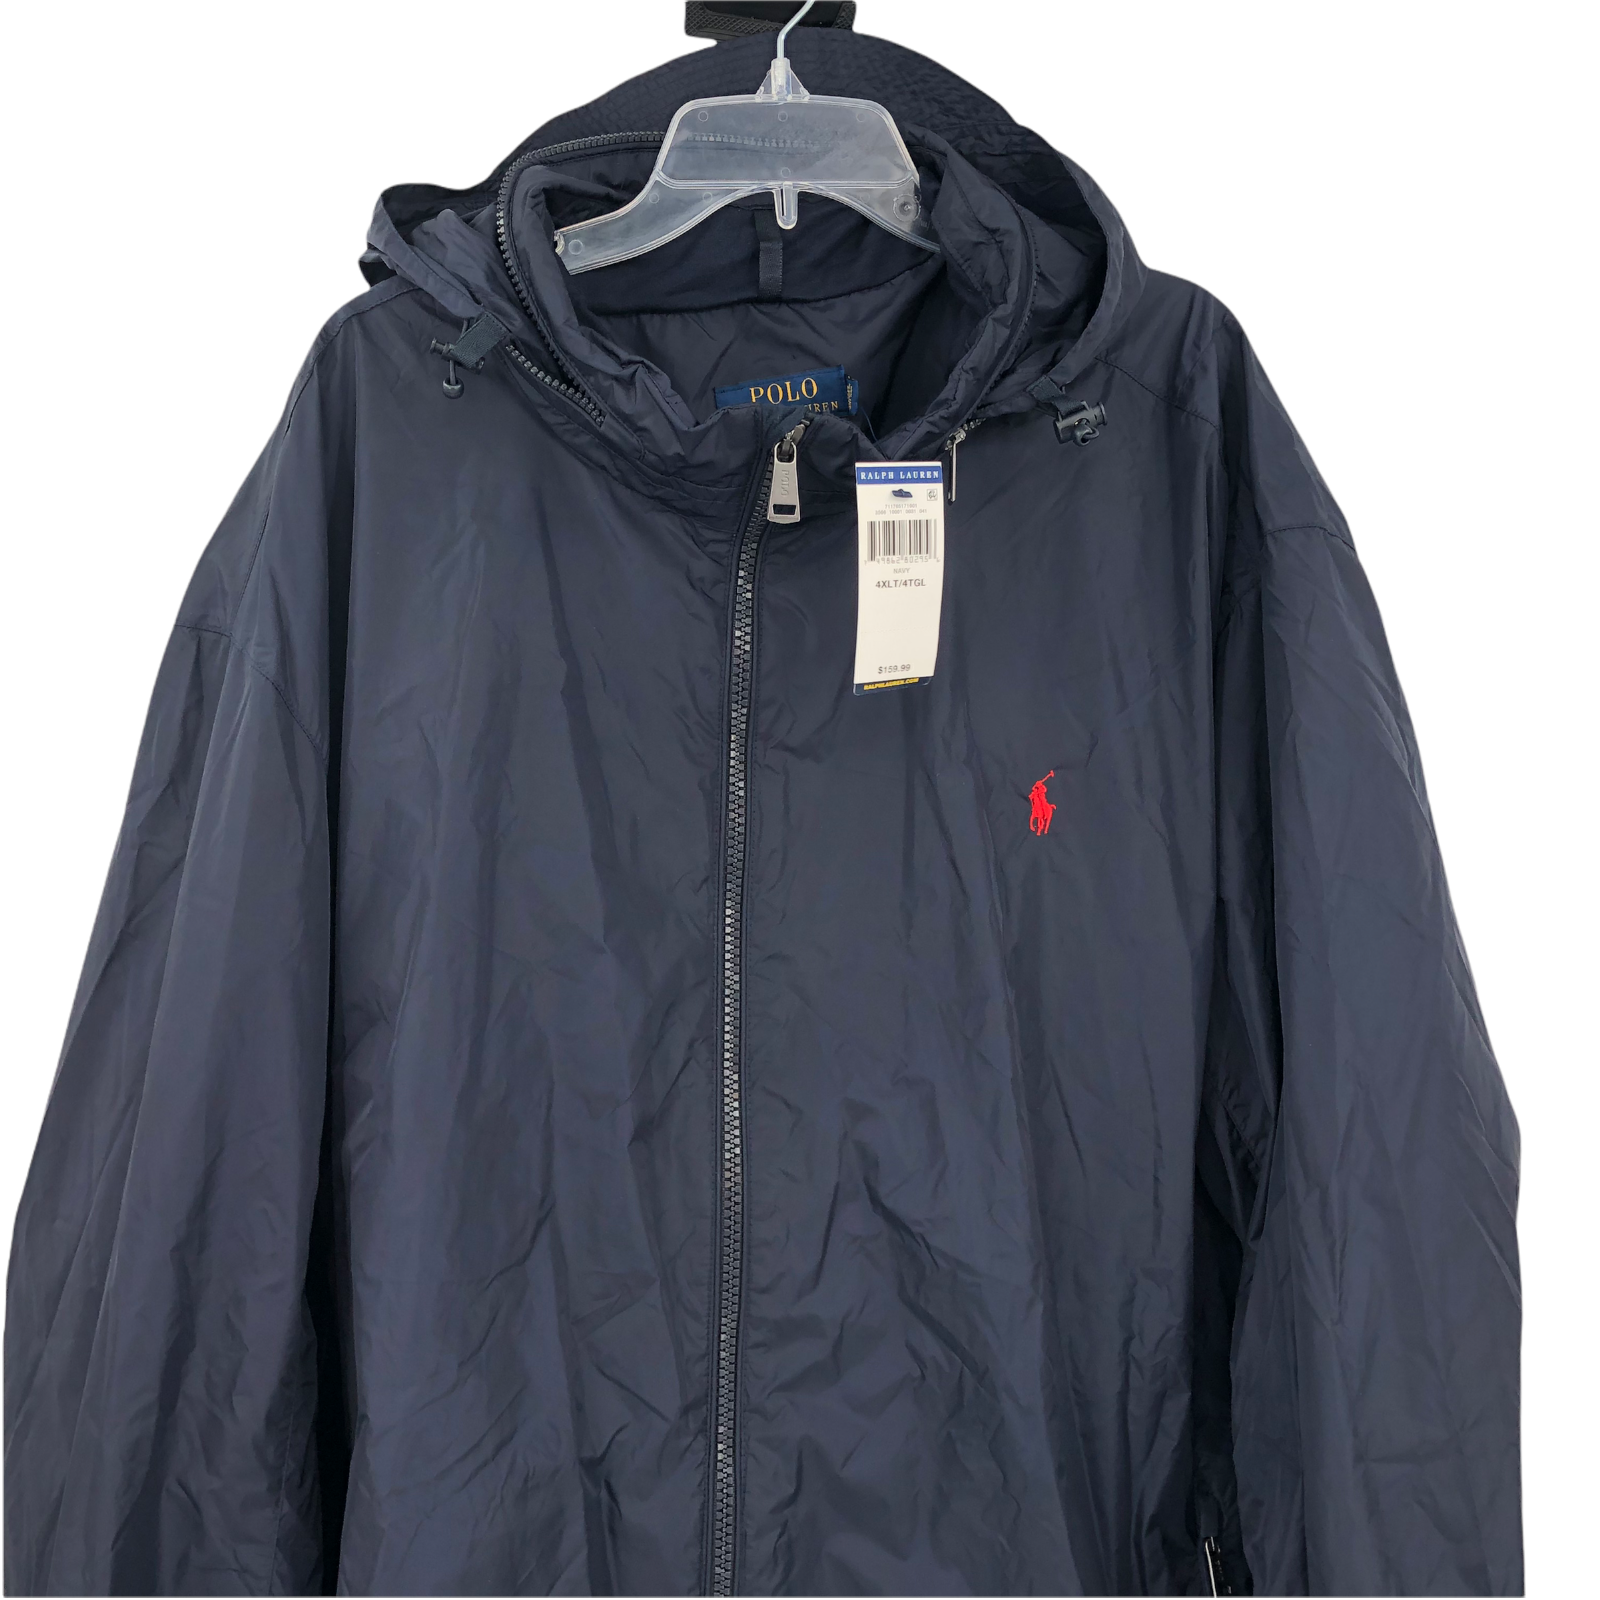 NWT Polo Ralph Lauren Mens Navy Blue Hooded Nylon Jacket Sz 4XLT Rain Windbrear